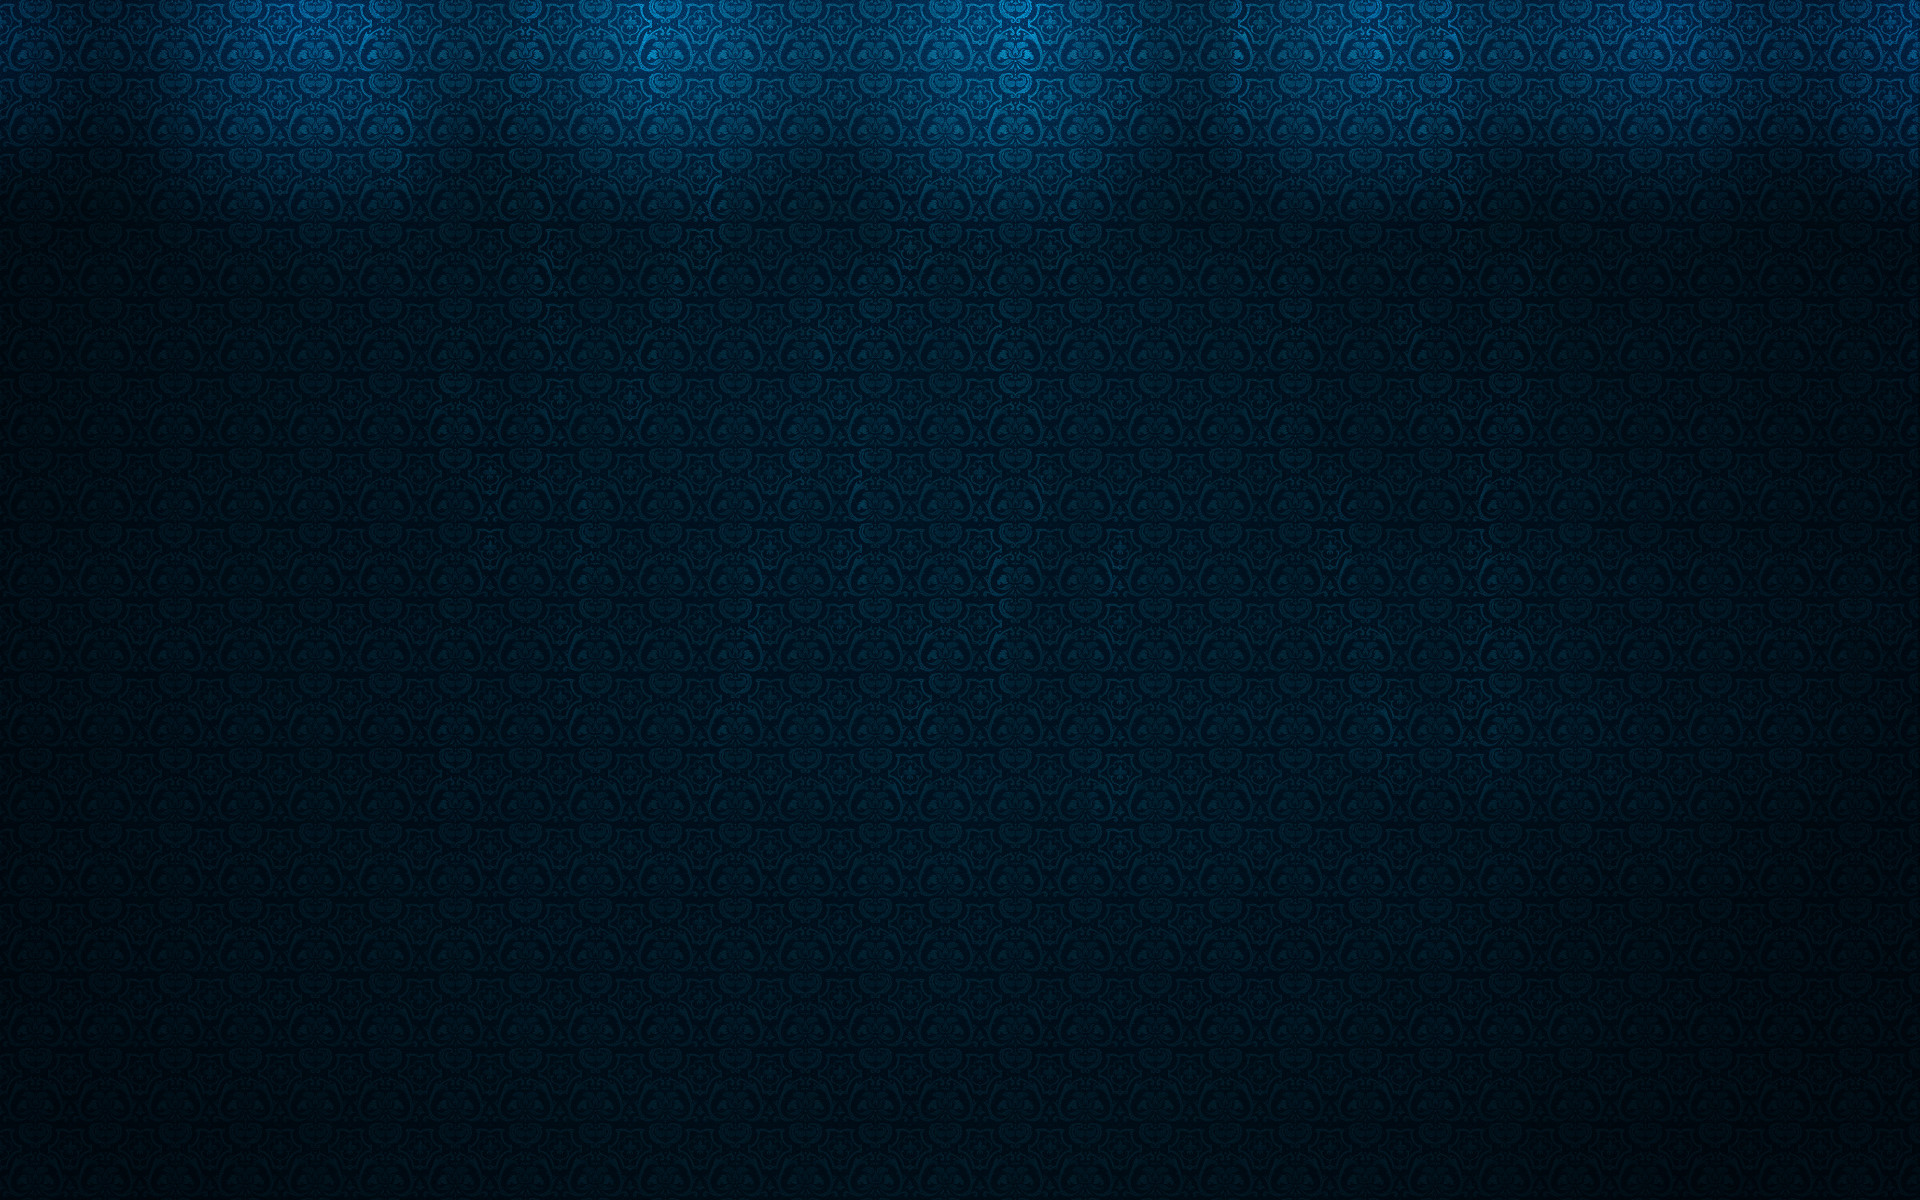 Dark Blue Aesthetic Wallpapers Desktop  PixelsTalkNet